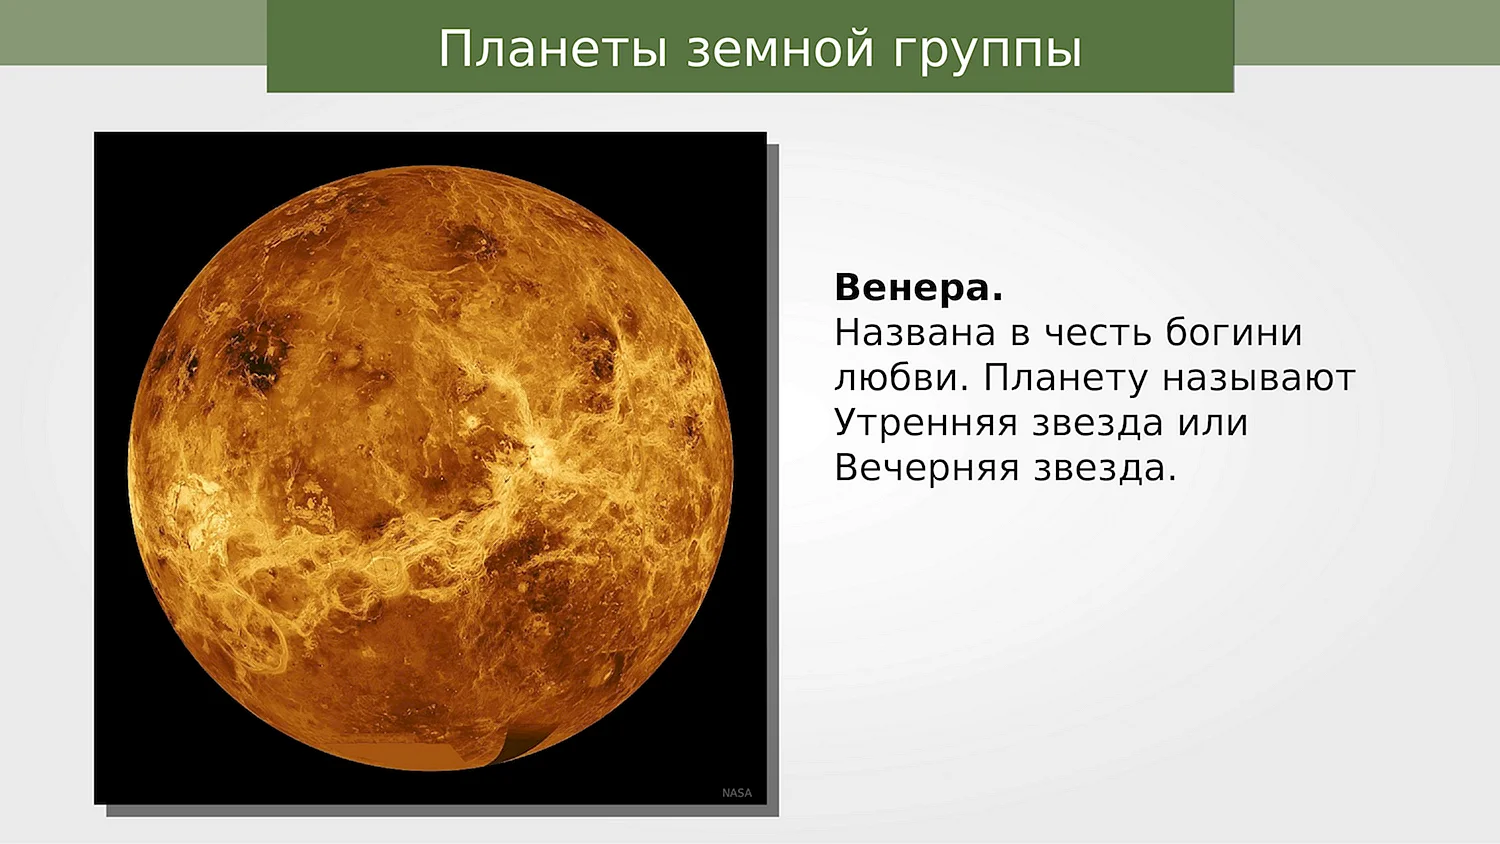 Венера это звезда или Планета